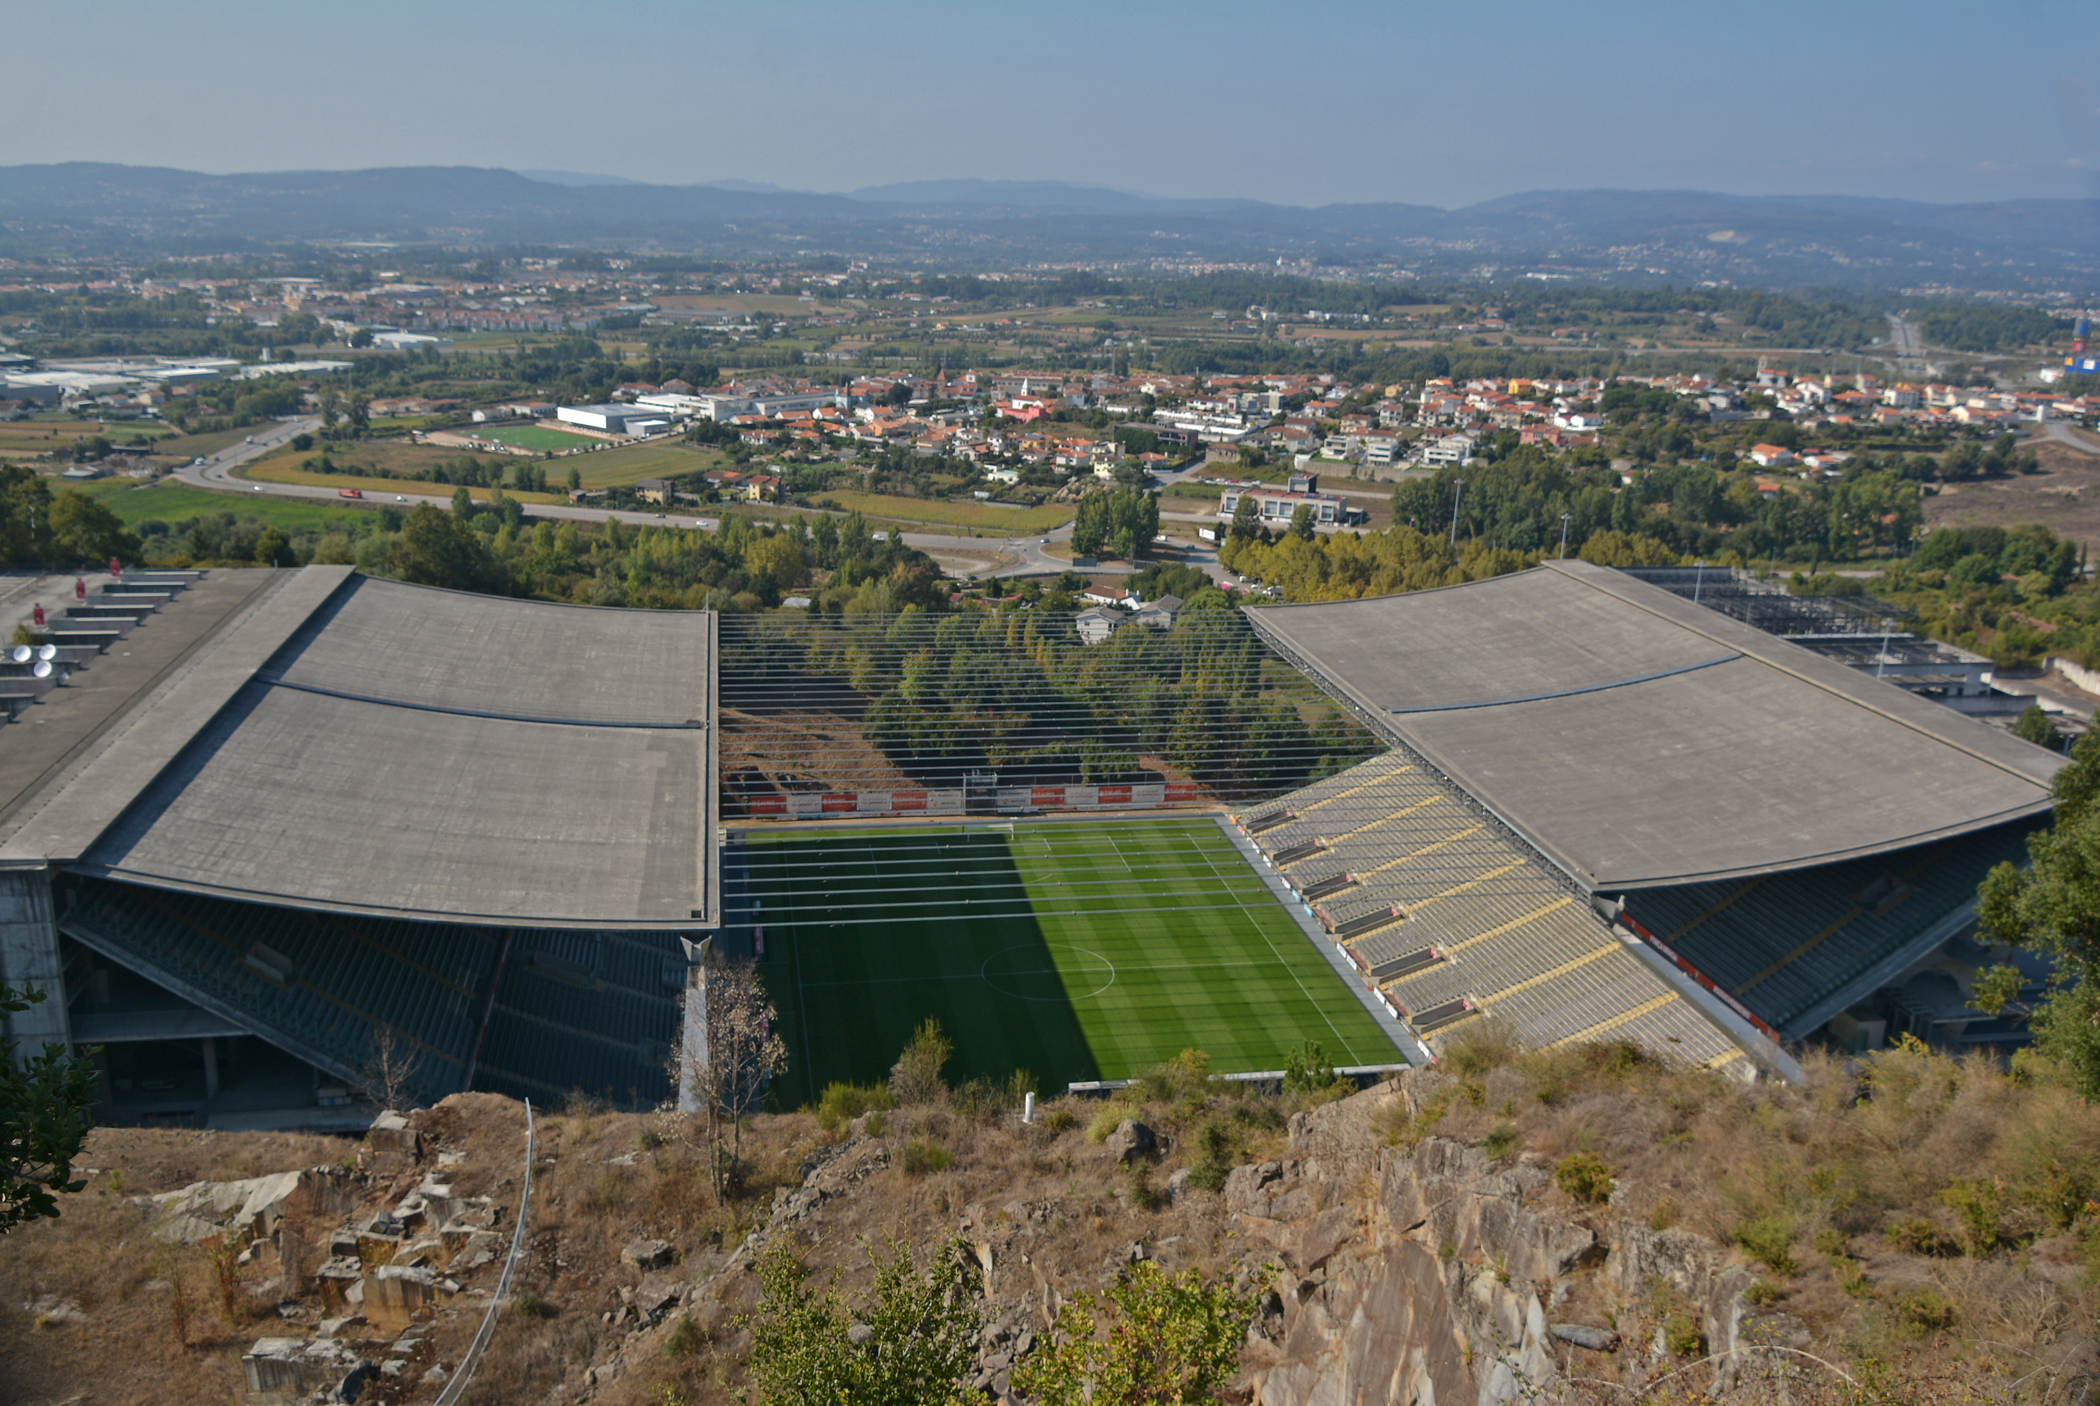 estádio municipal de braga - estádio da pedreira - braga 